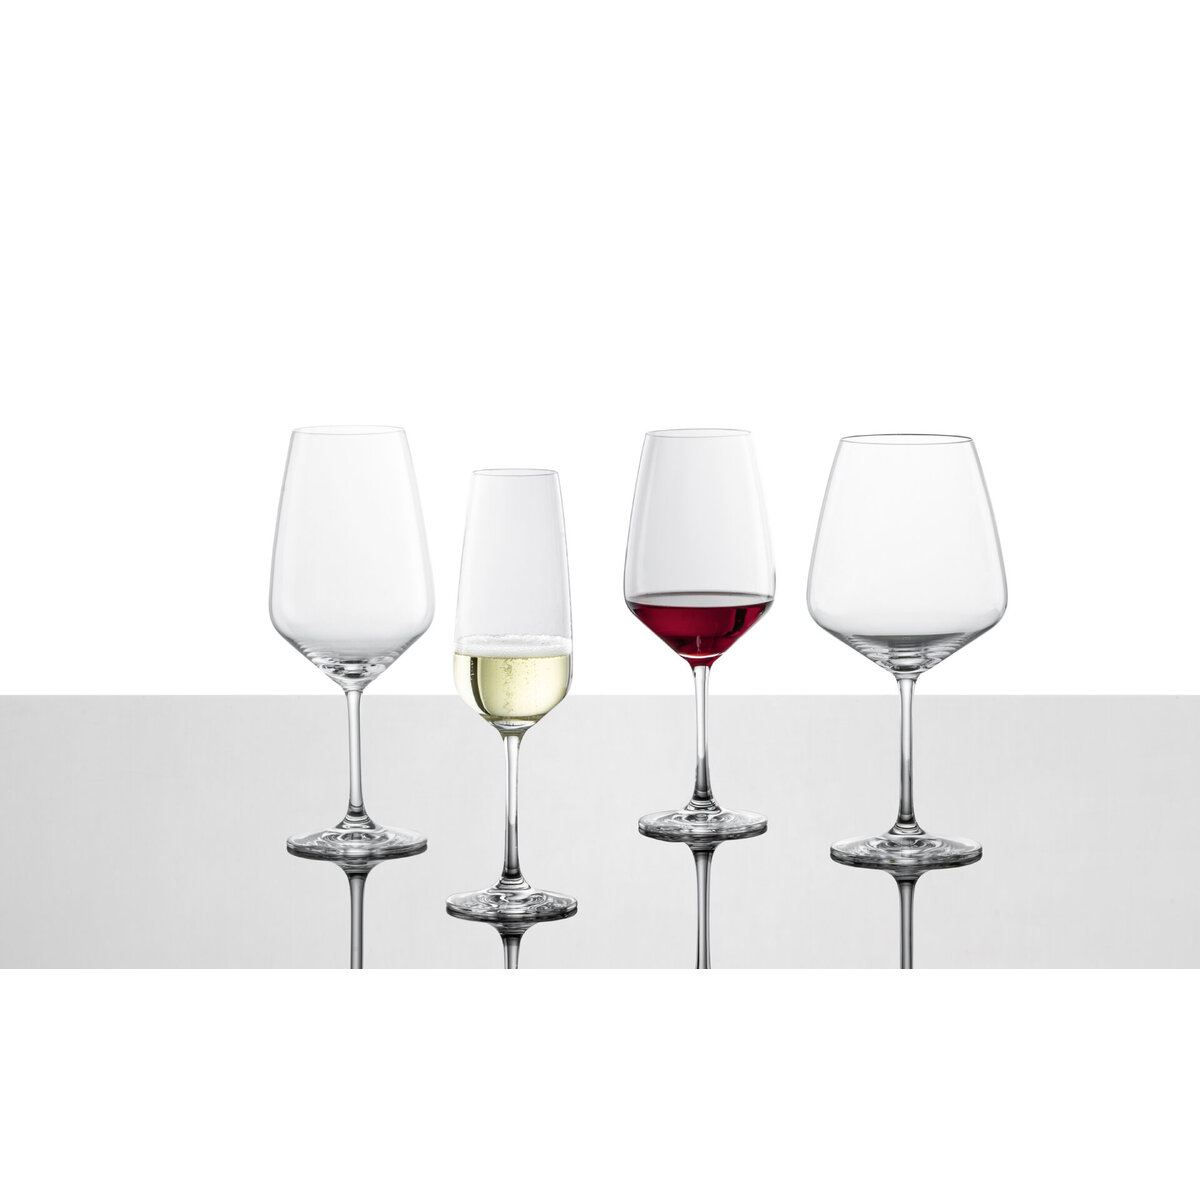 Glasserie "Taste" Rotweinglas 495ml mit Füllstrich (1)